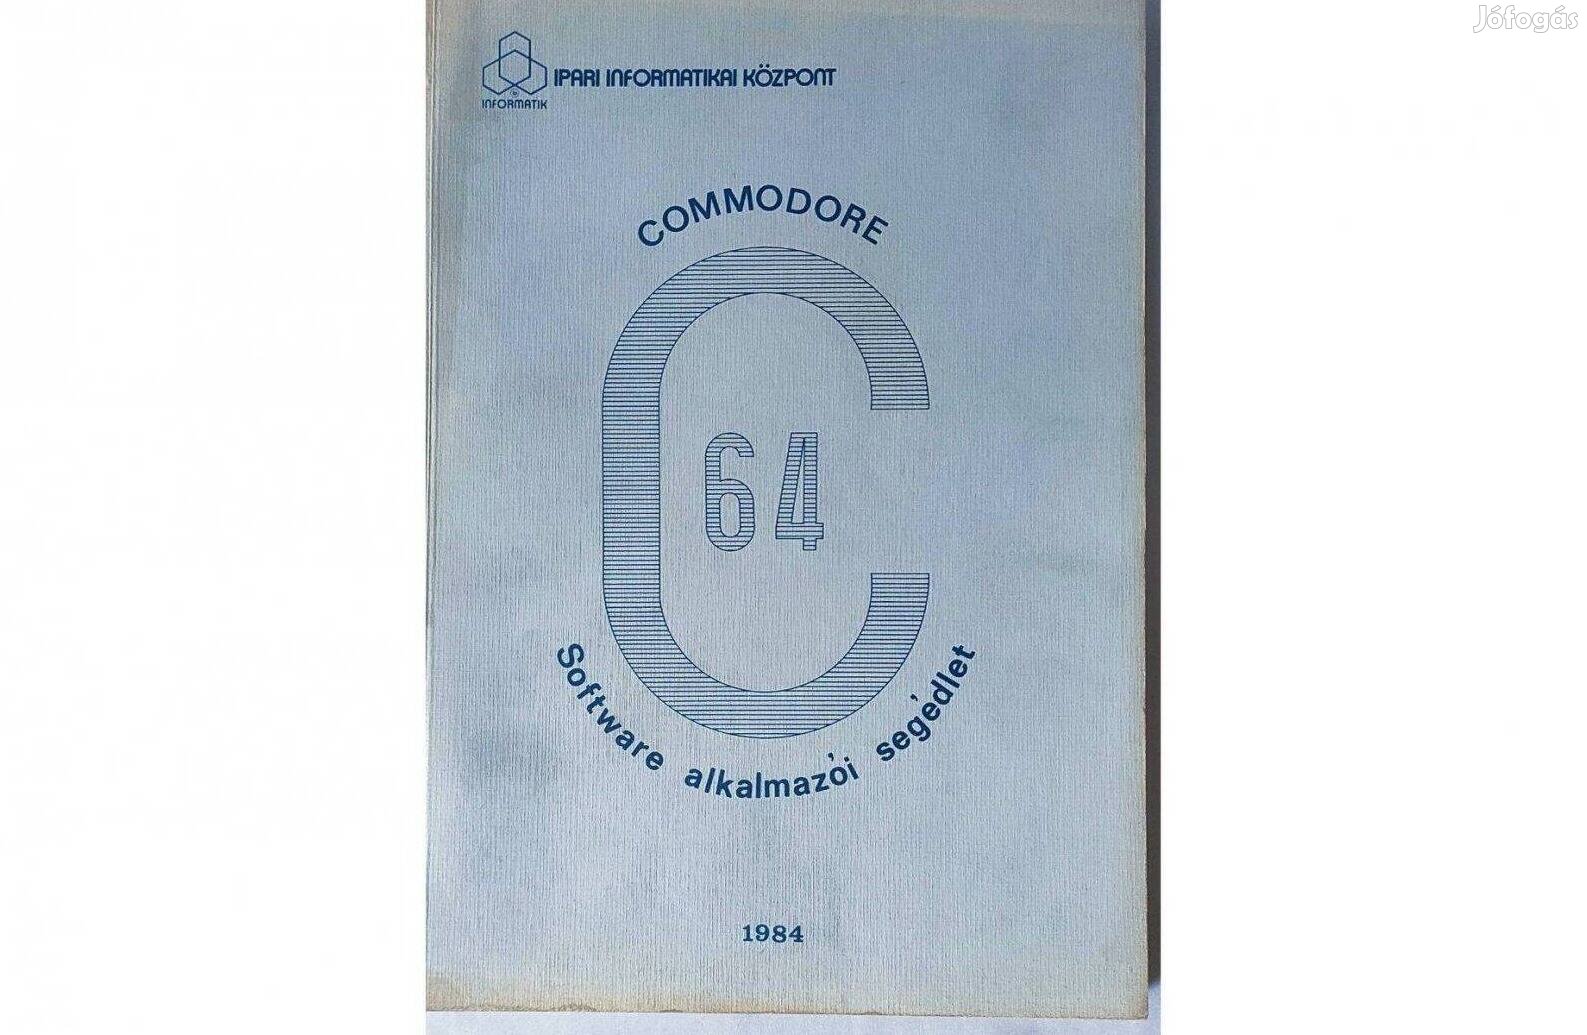 Commodore C64 Software alkalmazói segédlet 1984, Dr. Makra Ernőné